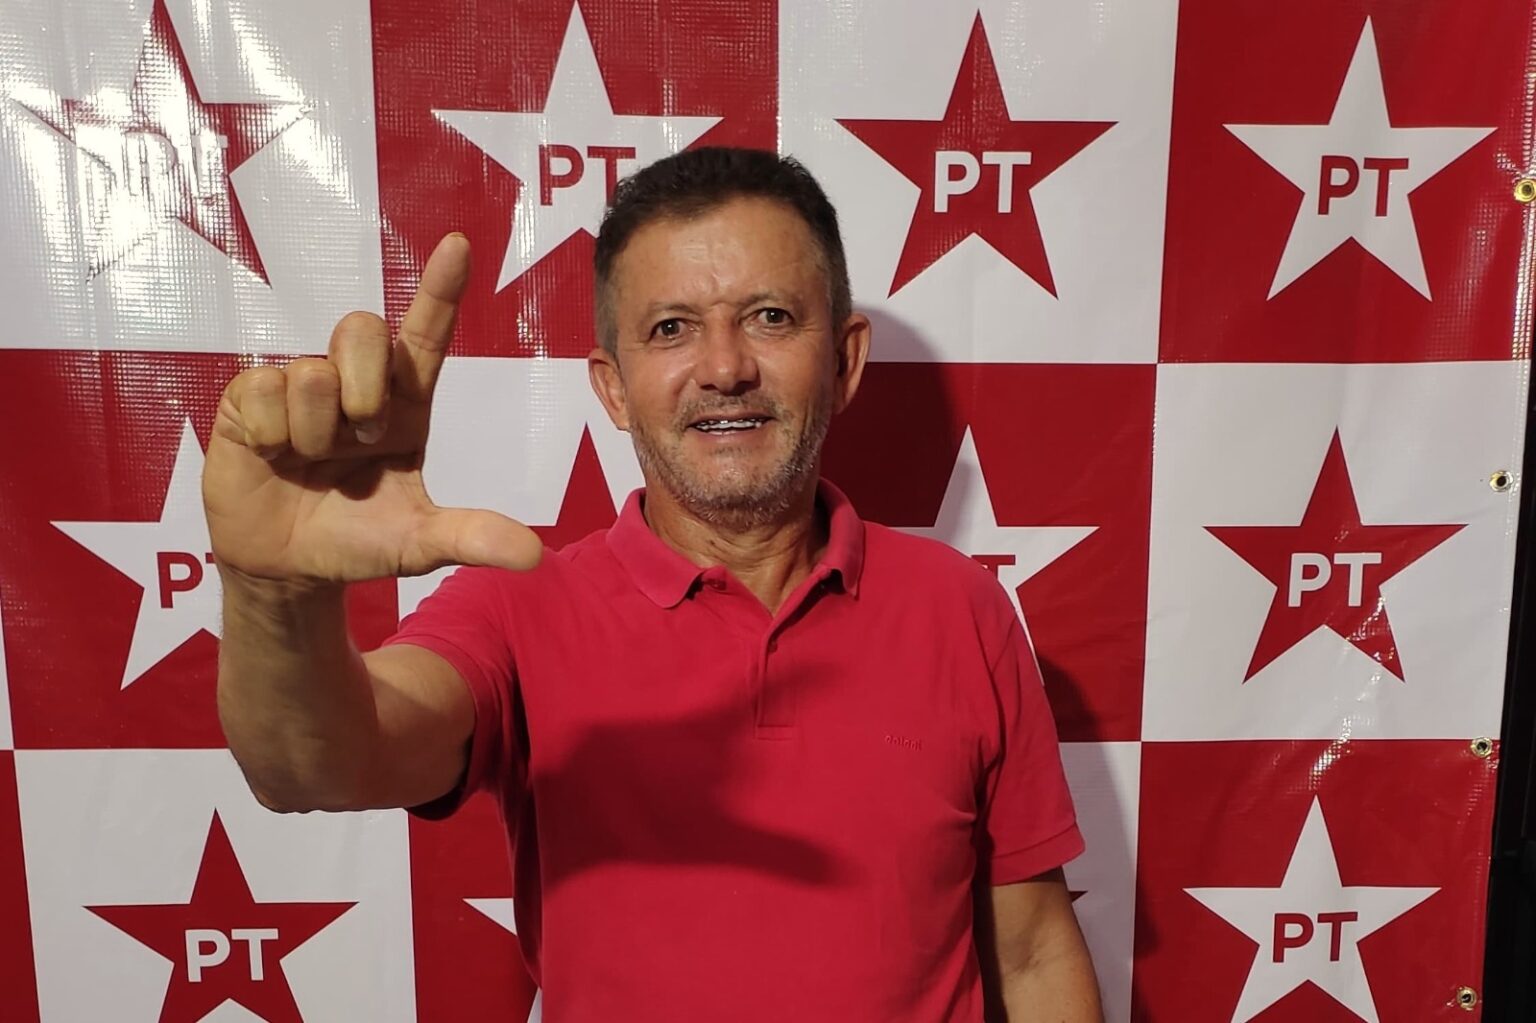  Empresário “Kaky” surge como pré-candidato à Prefeitura de Cachoeirinha pelo PT